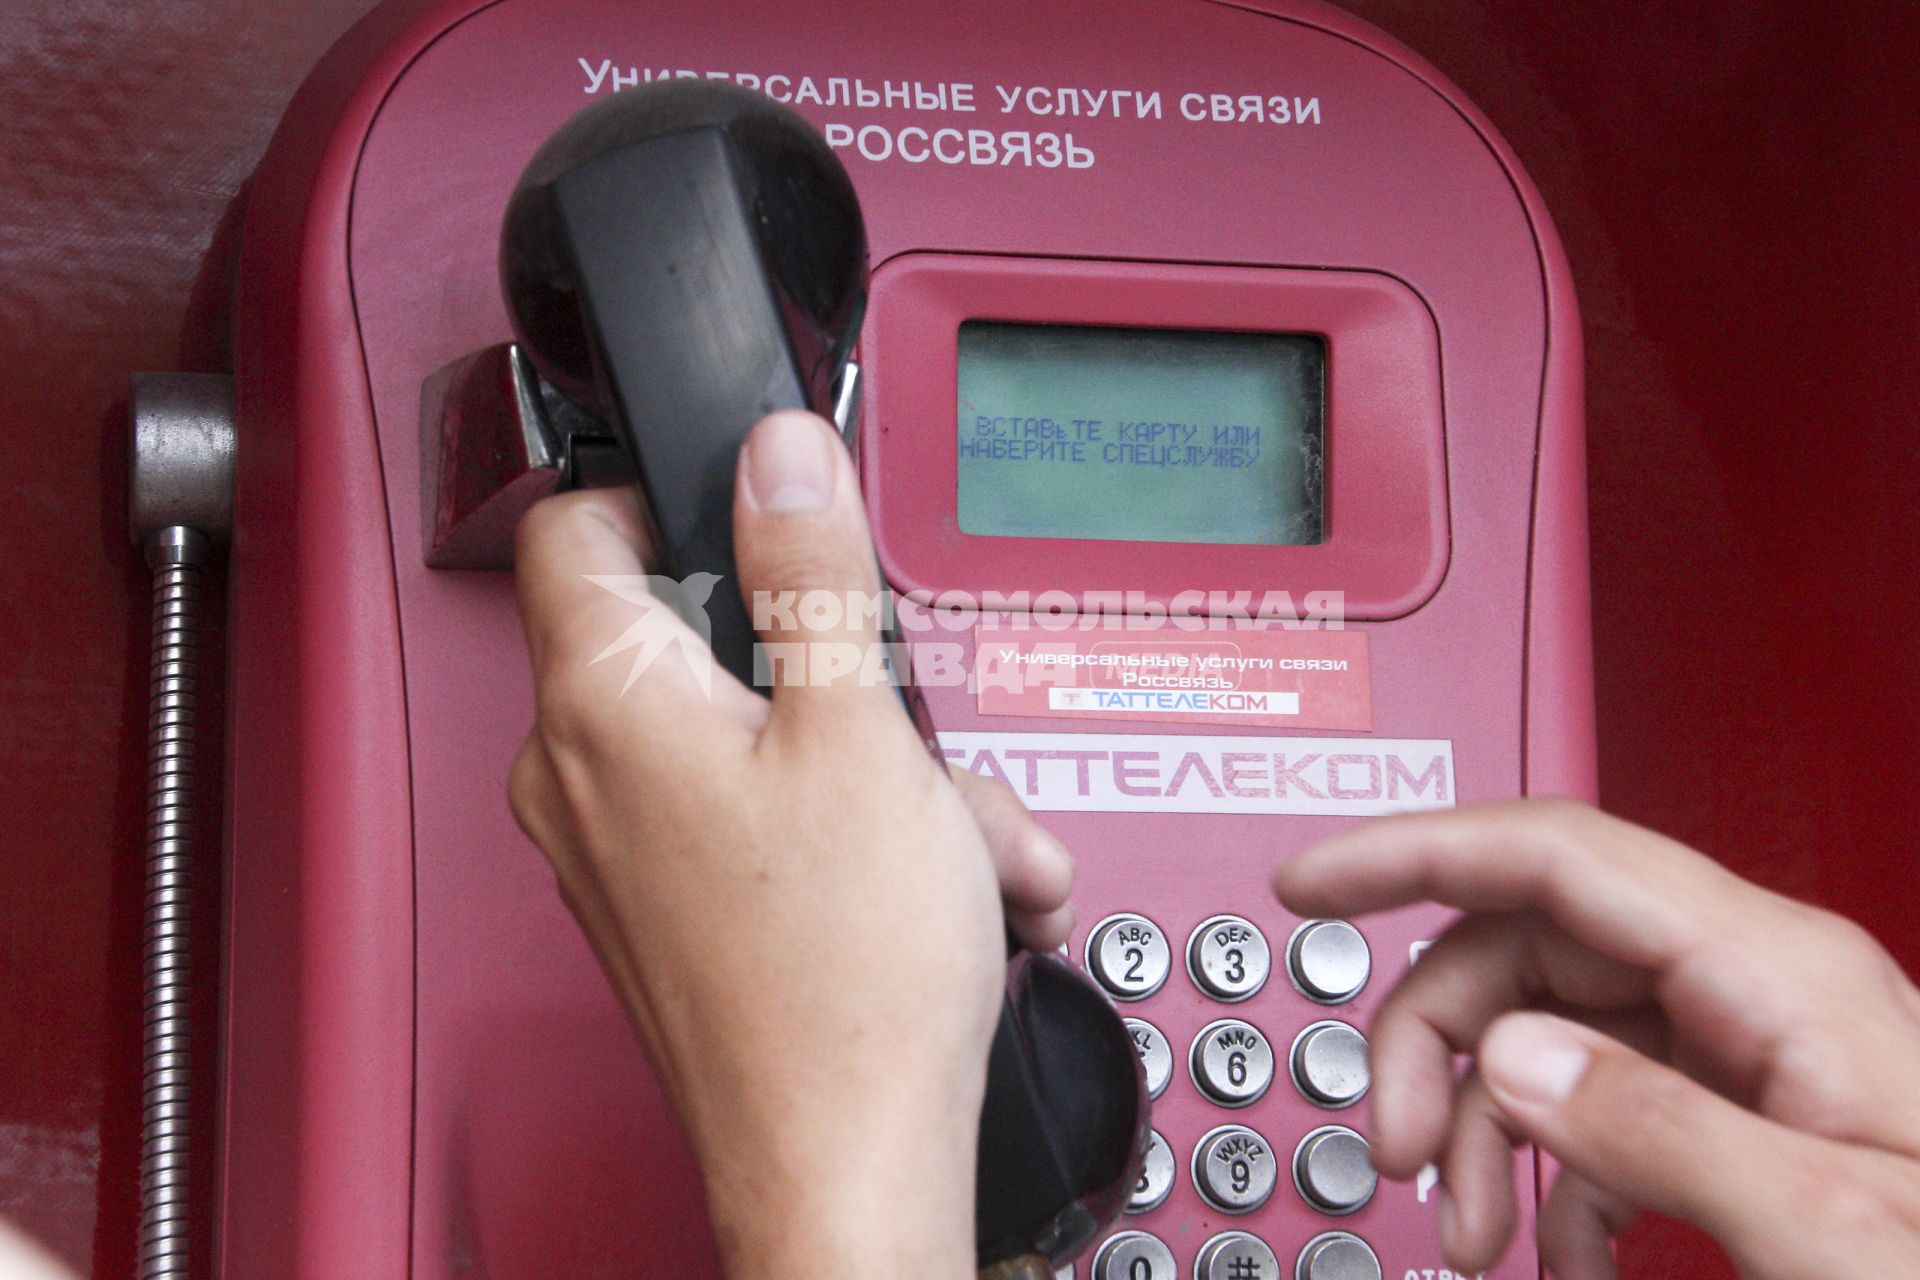 Уличный таксофон с надписью: `Универсальные услуги связи Россвязь`.